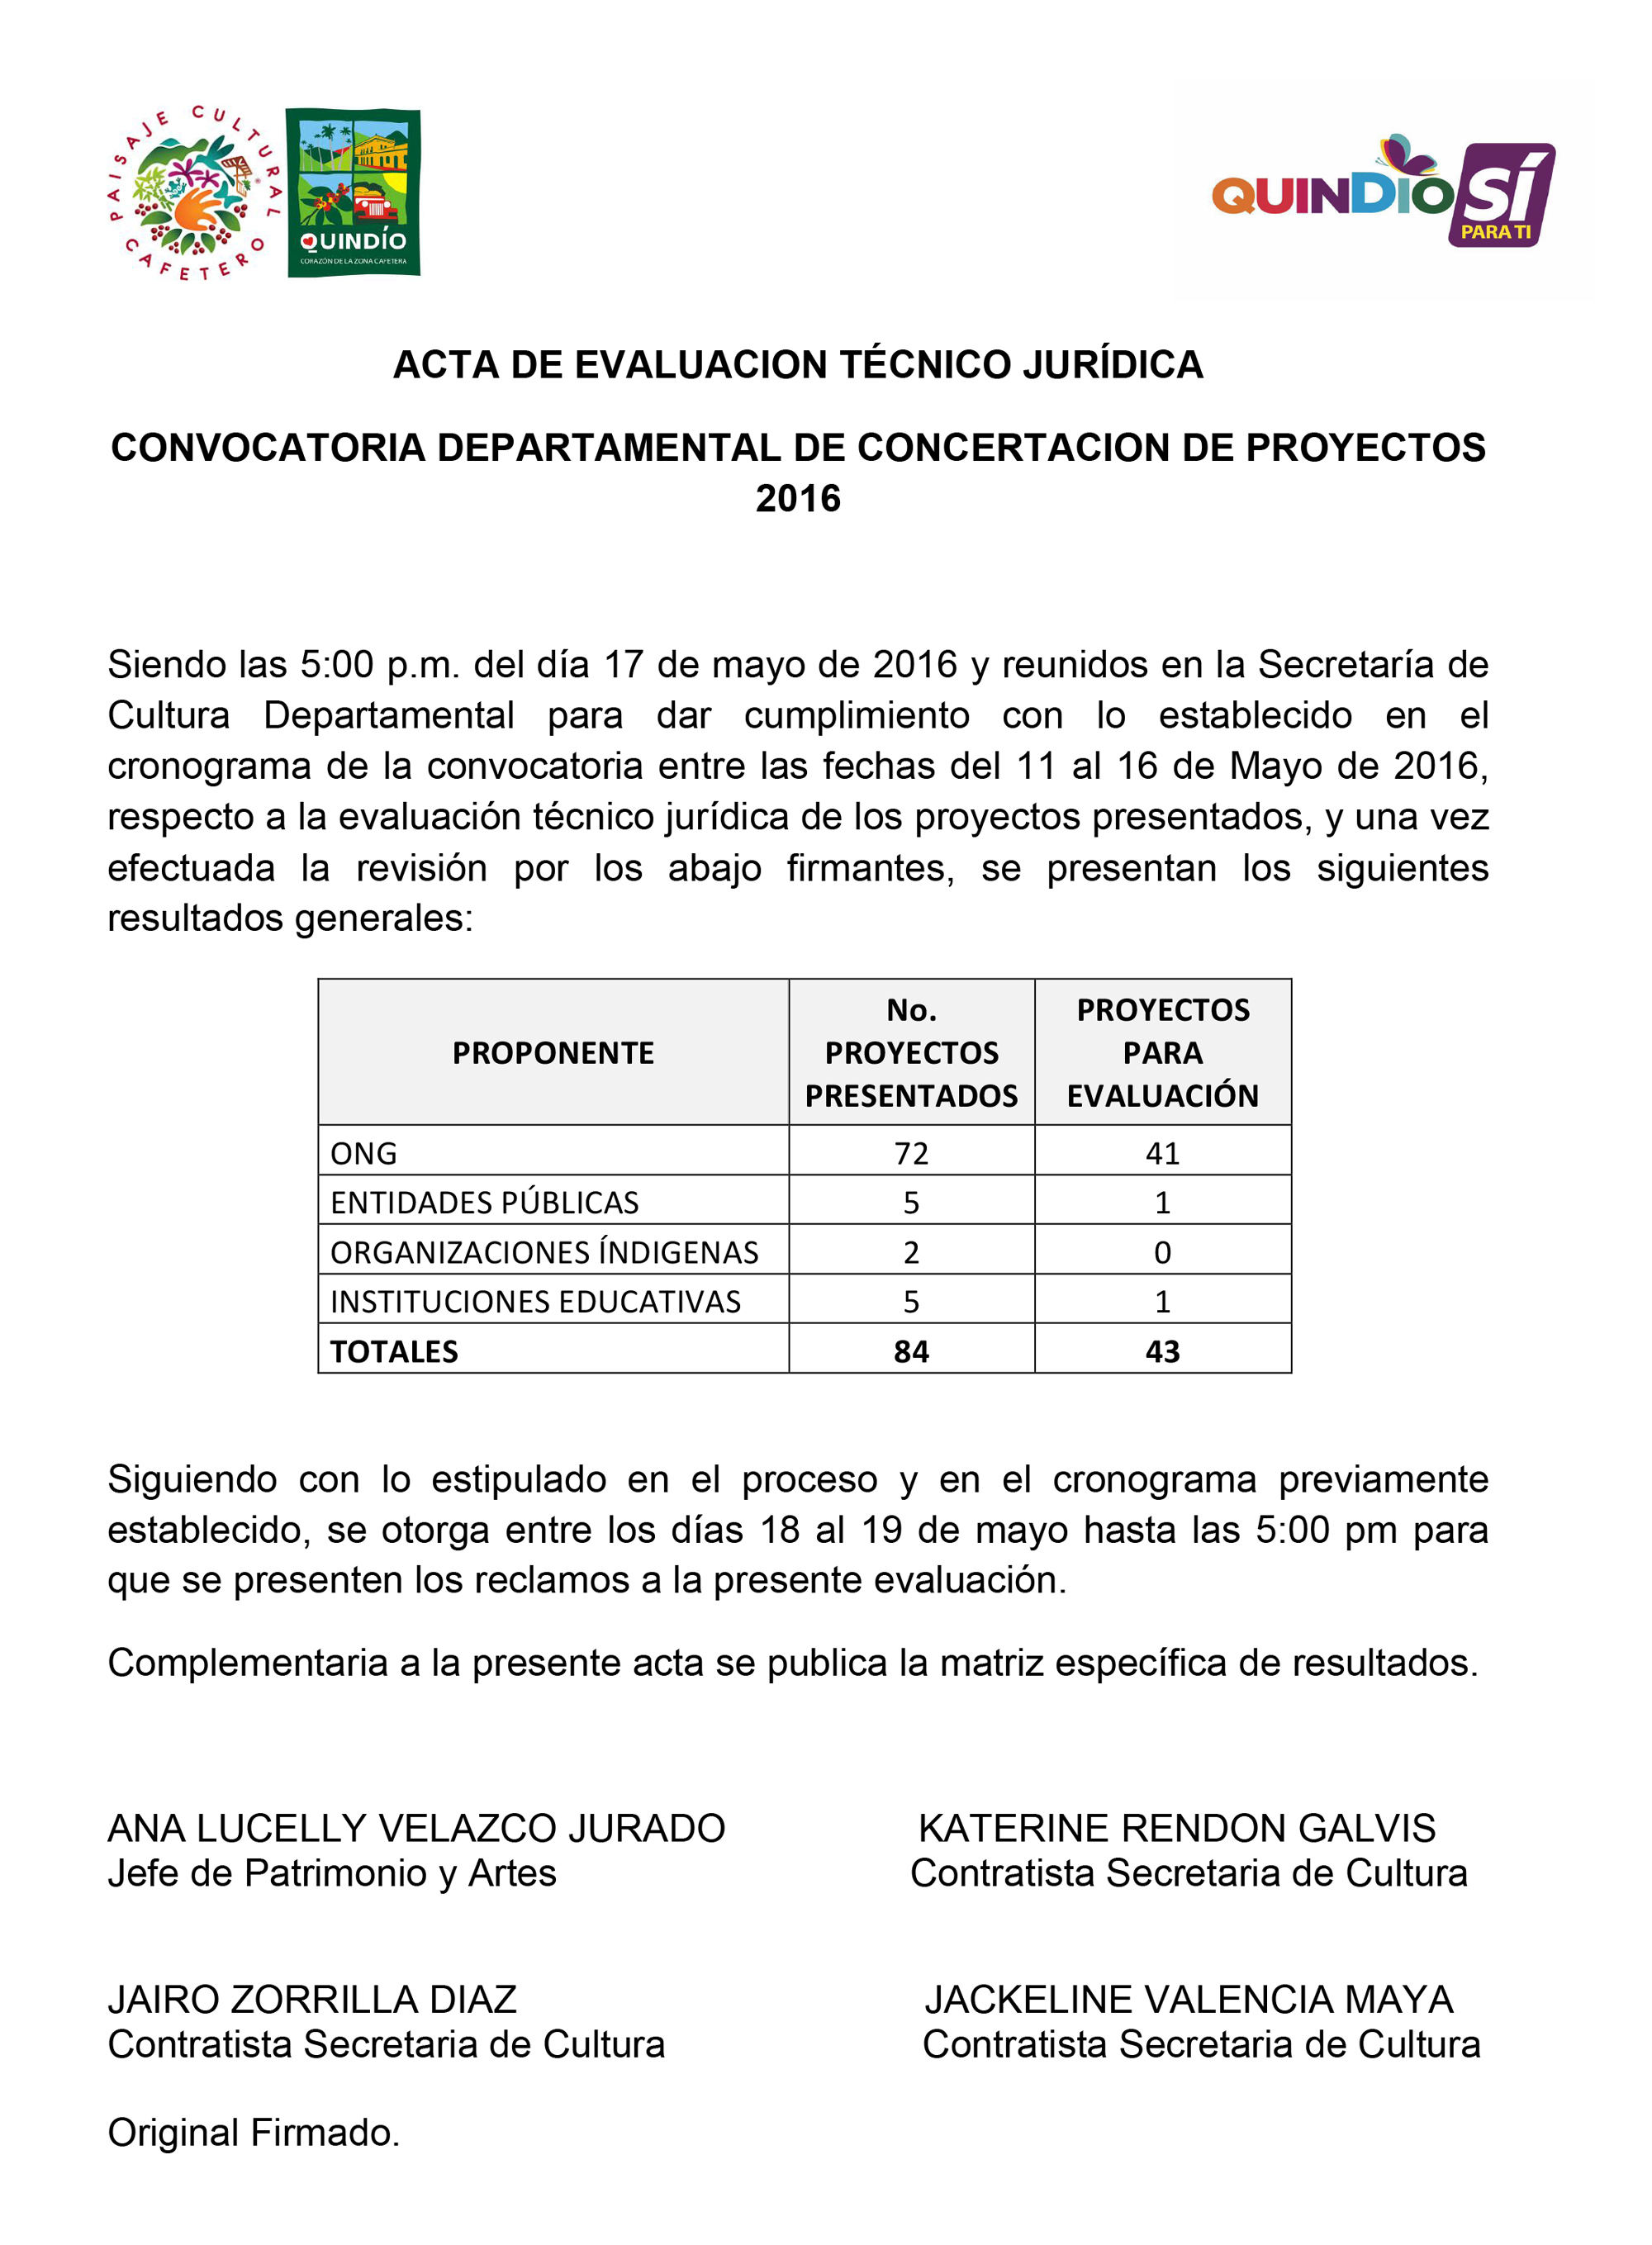 ACTA DE EVALUACION TECNICO JURIDICA 2016 - Publicar